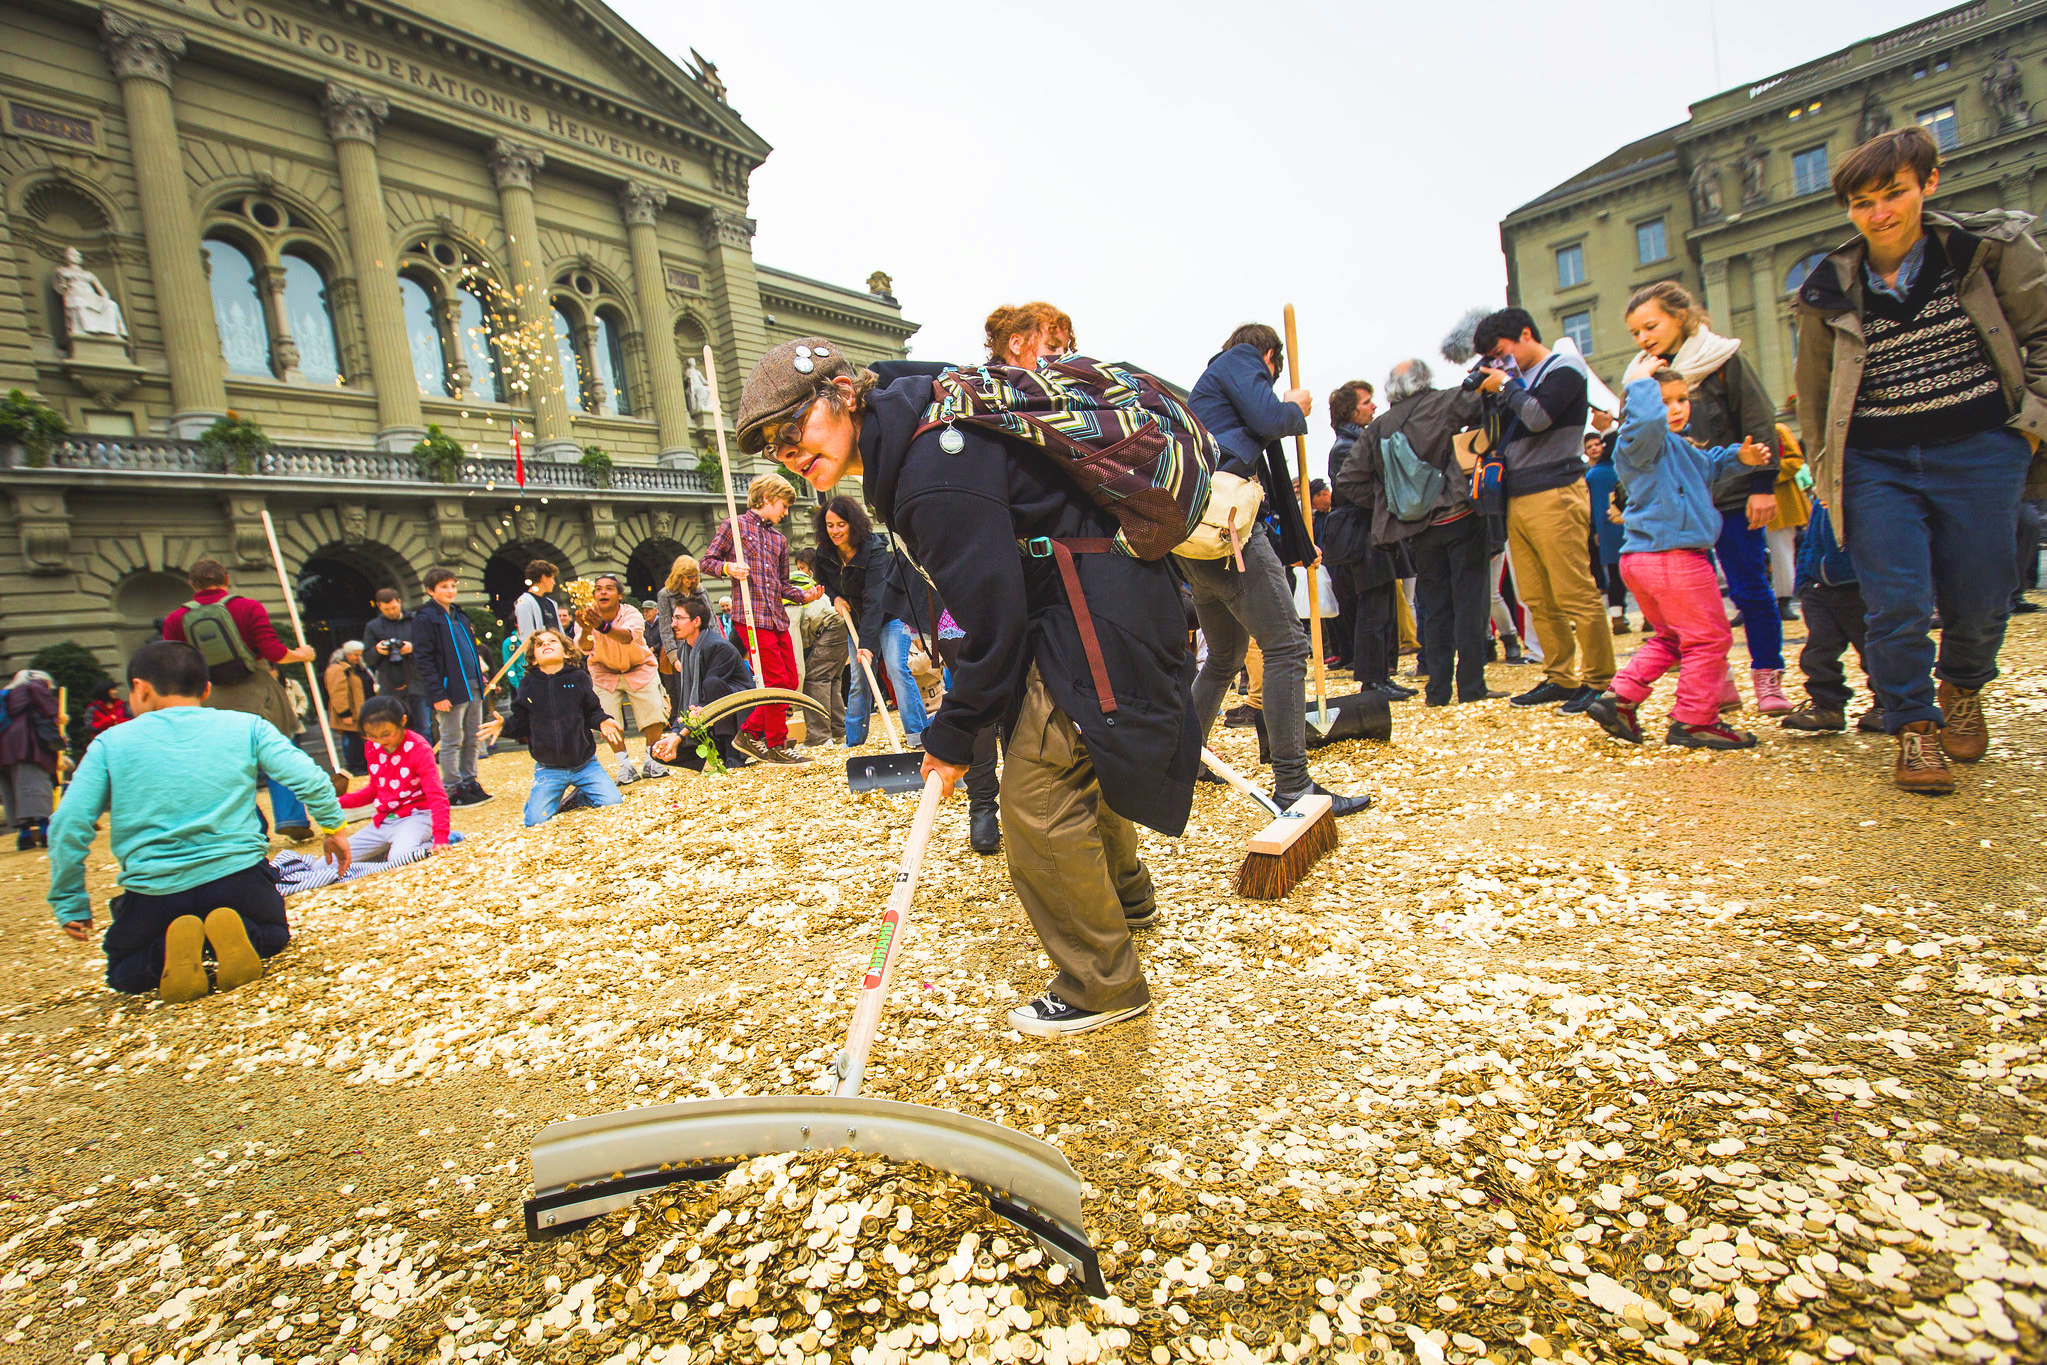 Une foule de gens sont réunis sur une place. Il y a des pièces de monnaie partout sur le sol, certains jouent avec, d'autres balaient.